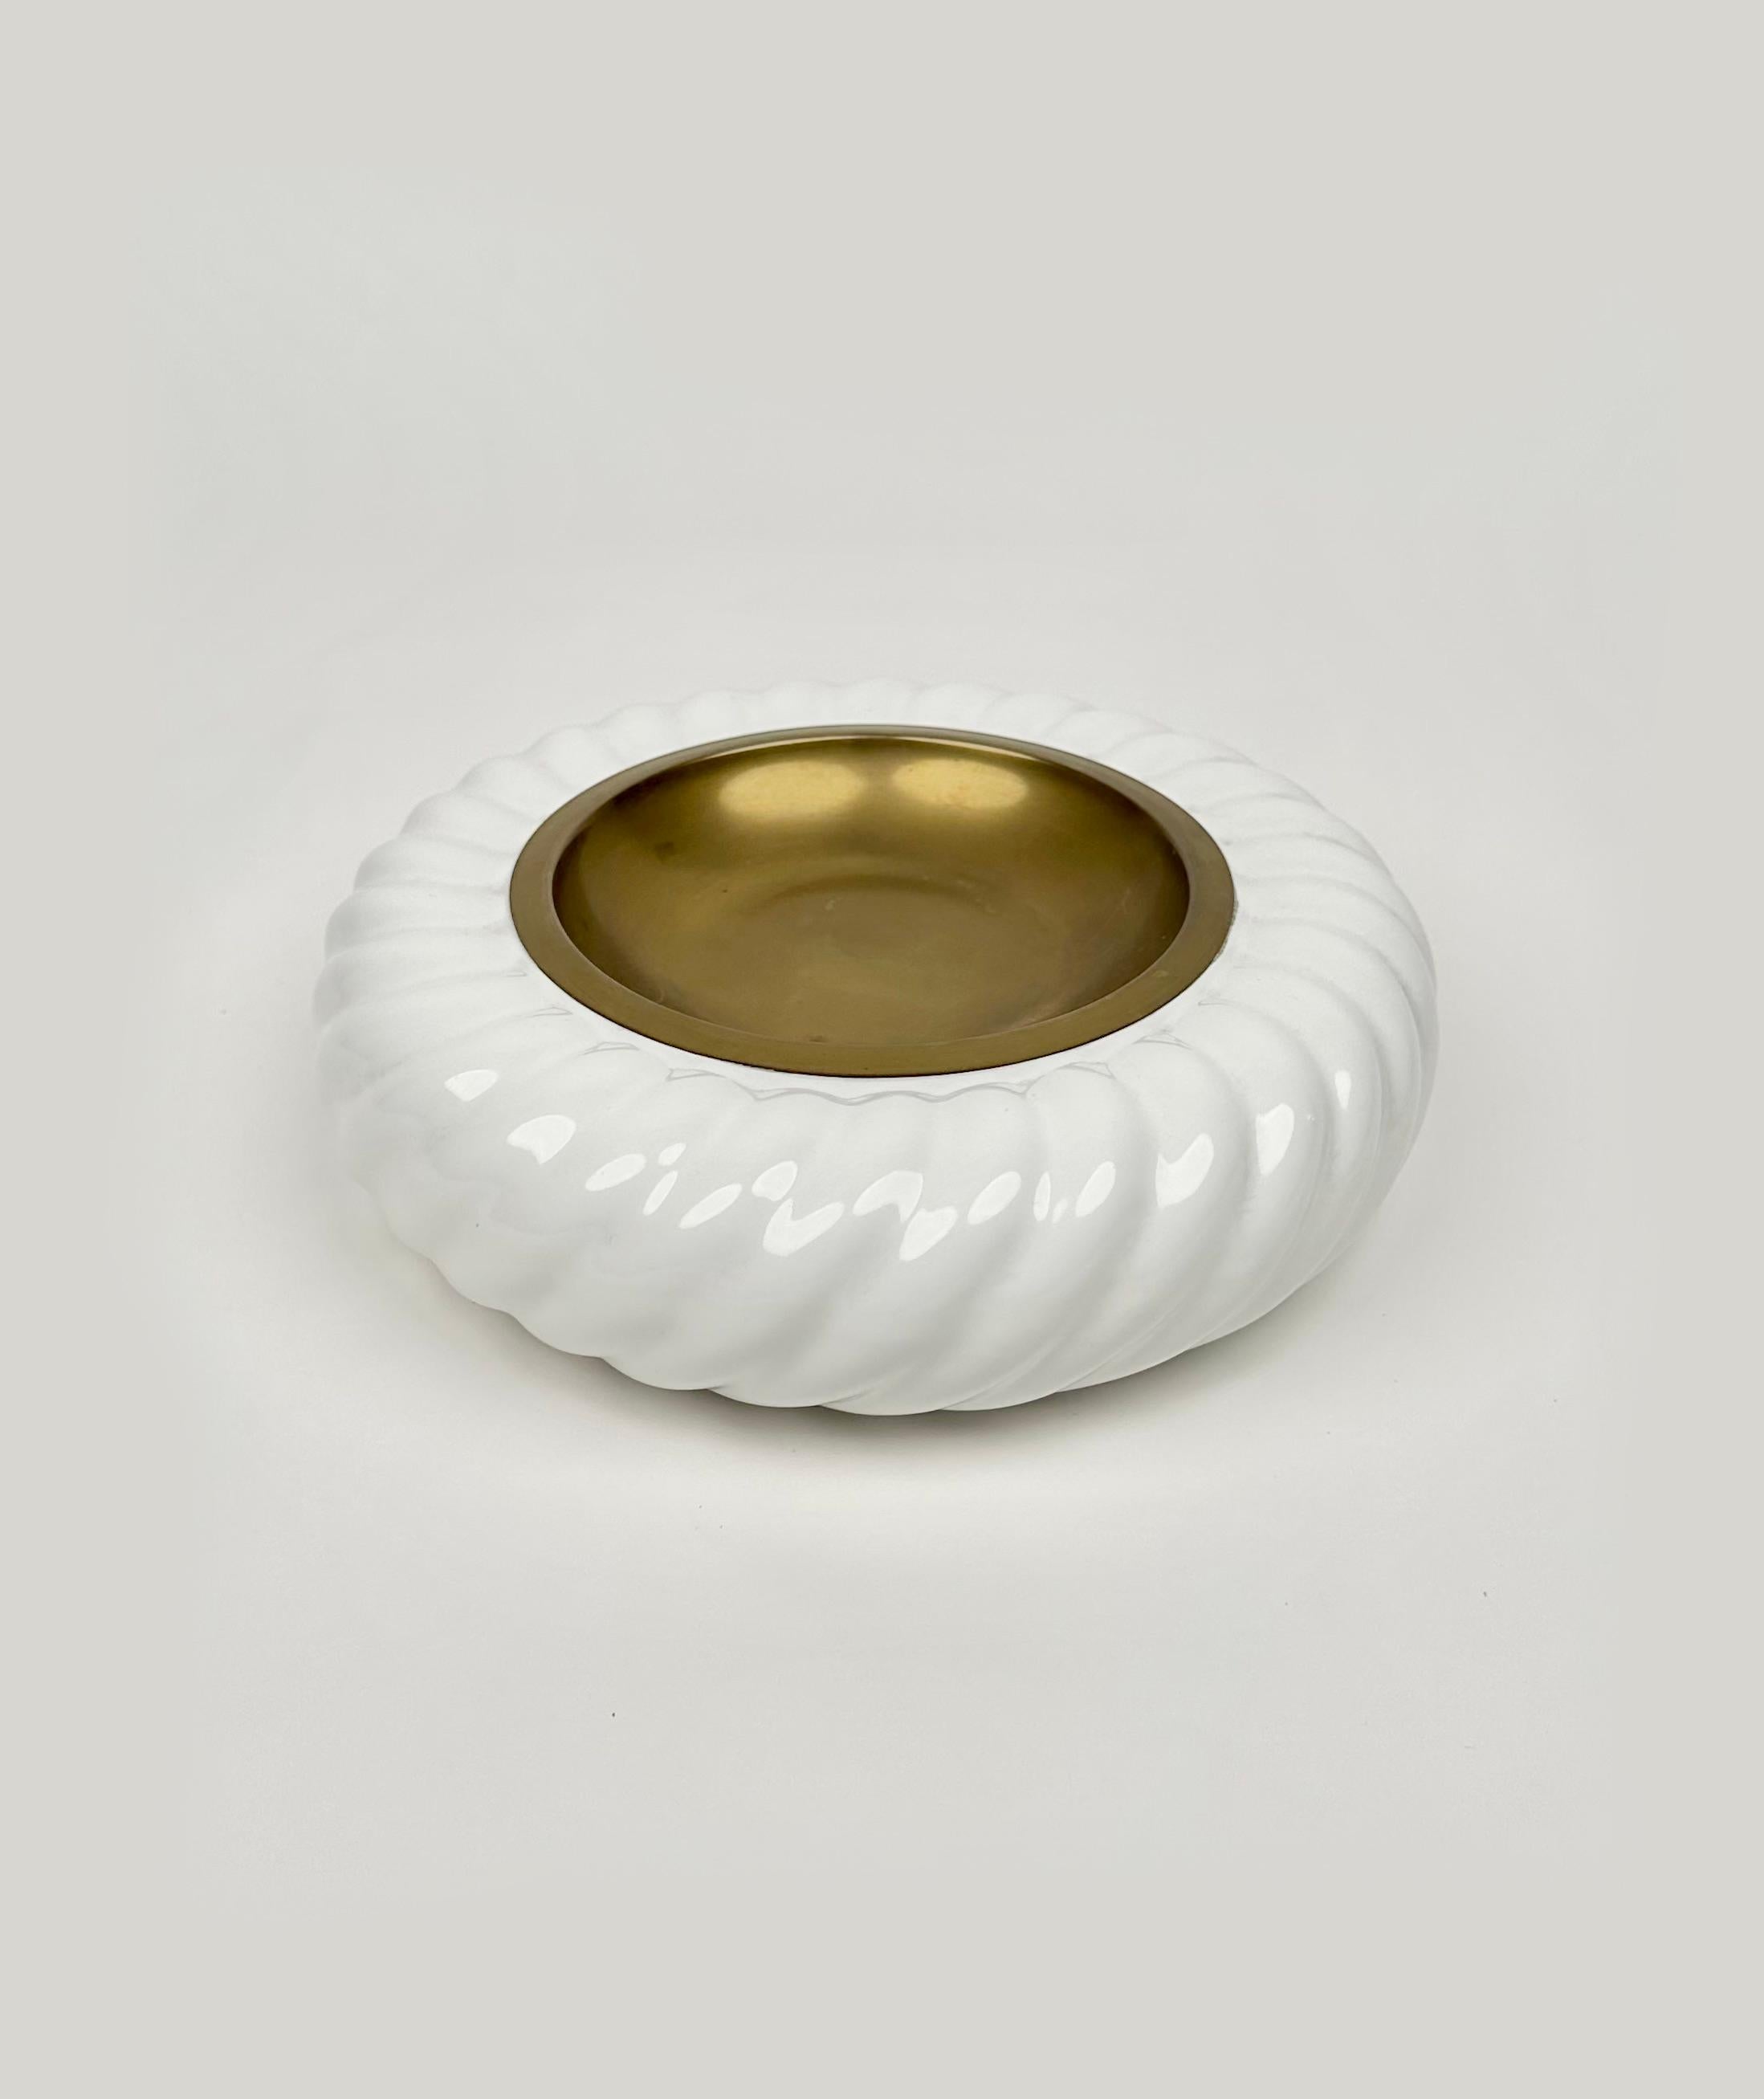 Superbe cendrier rond ou vide-poche en céramique blanche et laiton du designer italien Tommaso Barbi pour B ceramiche.   

Fabriqué en Italie dans les années 1970.   

La signature de Tommaso Barbi est visible sur le fond, comme le montrent les